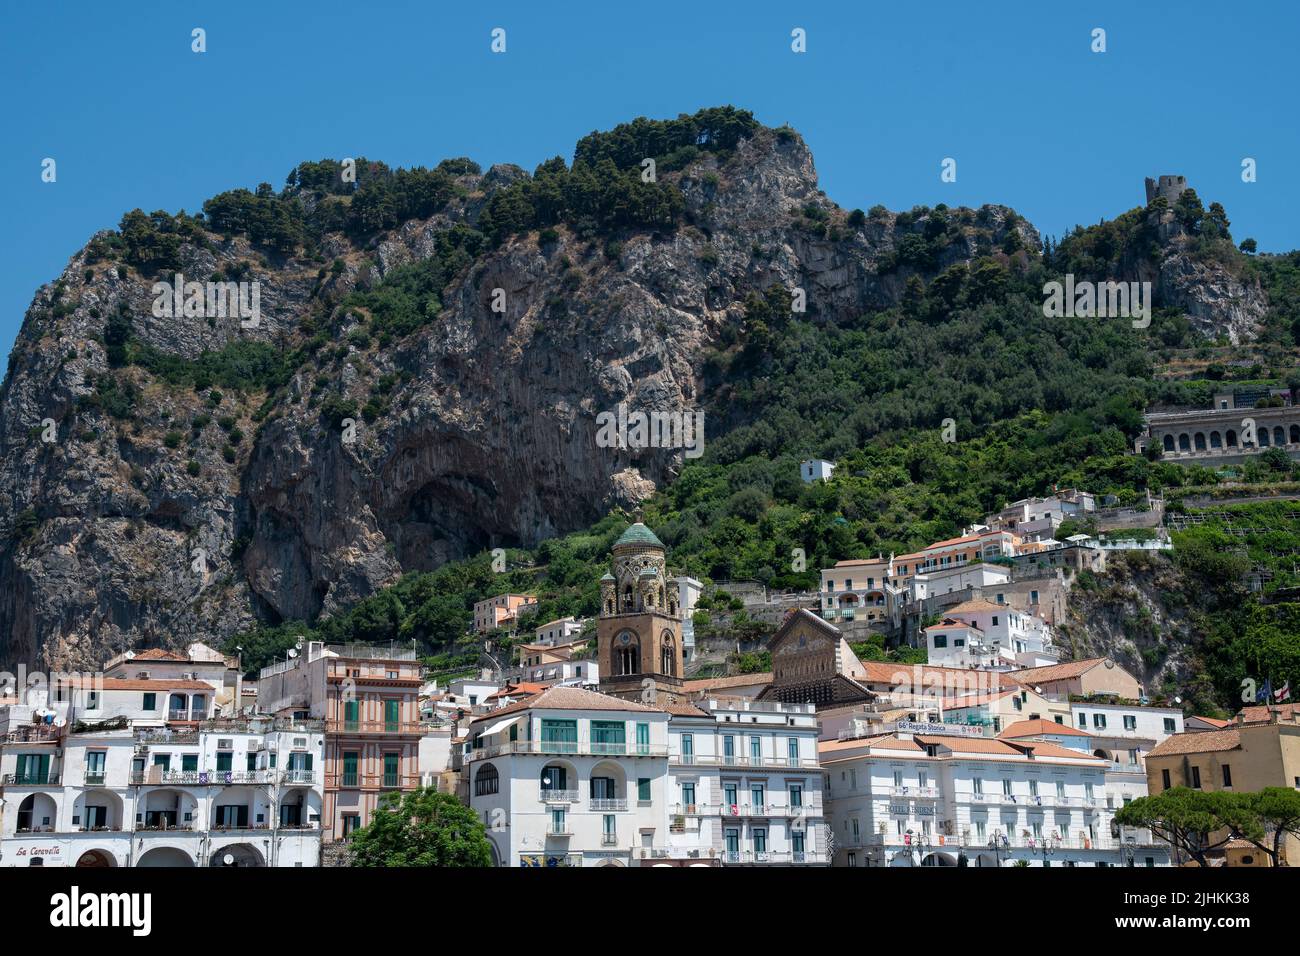 La ciudad de Amalfi, declarada Patrimonio de la Humanidad por la UNESCO, una ciudad en un espectacular entorno natural que muestra la Catedral de San Andrés, Foto de stock